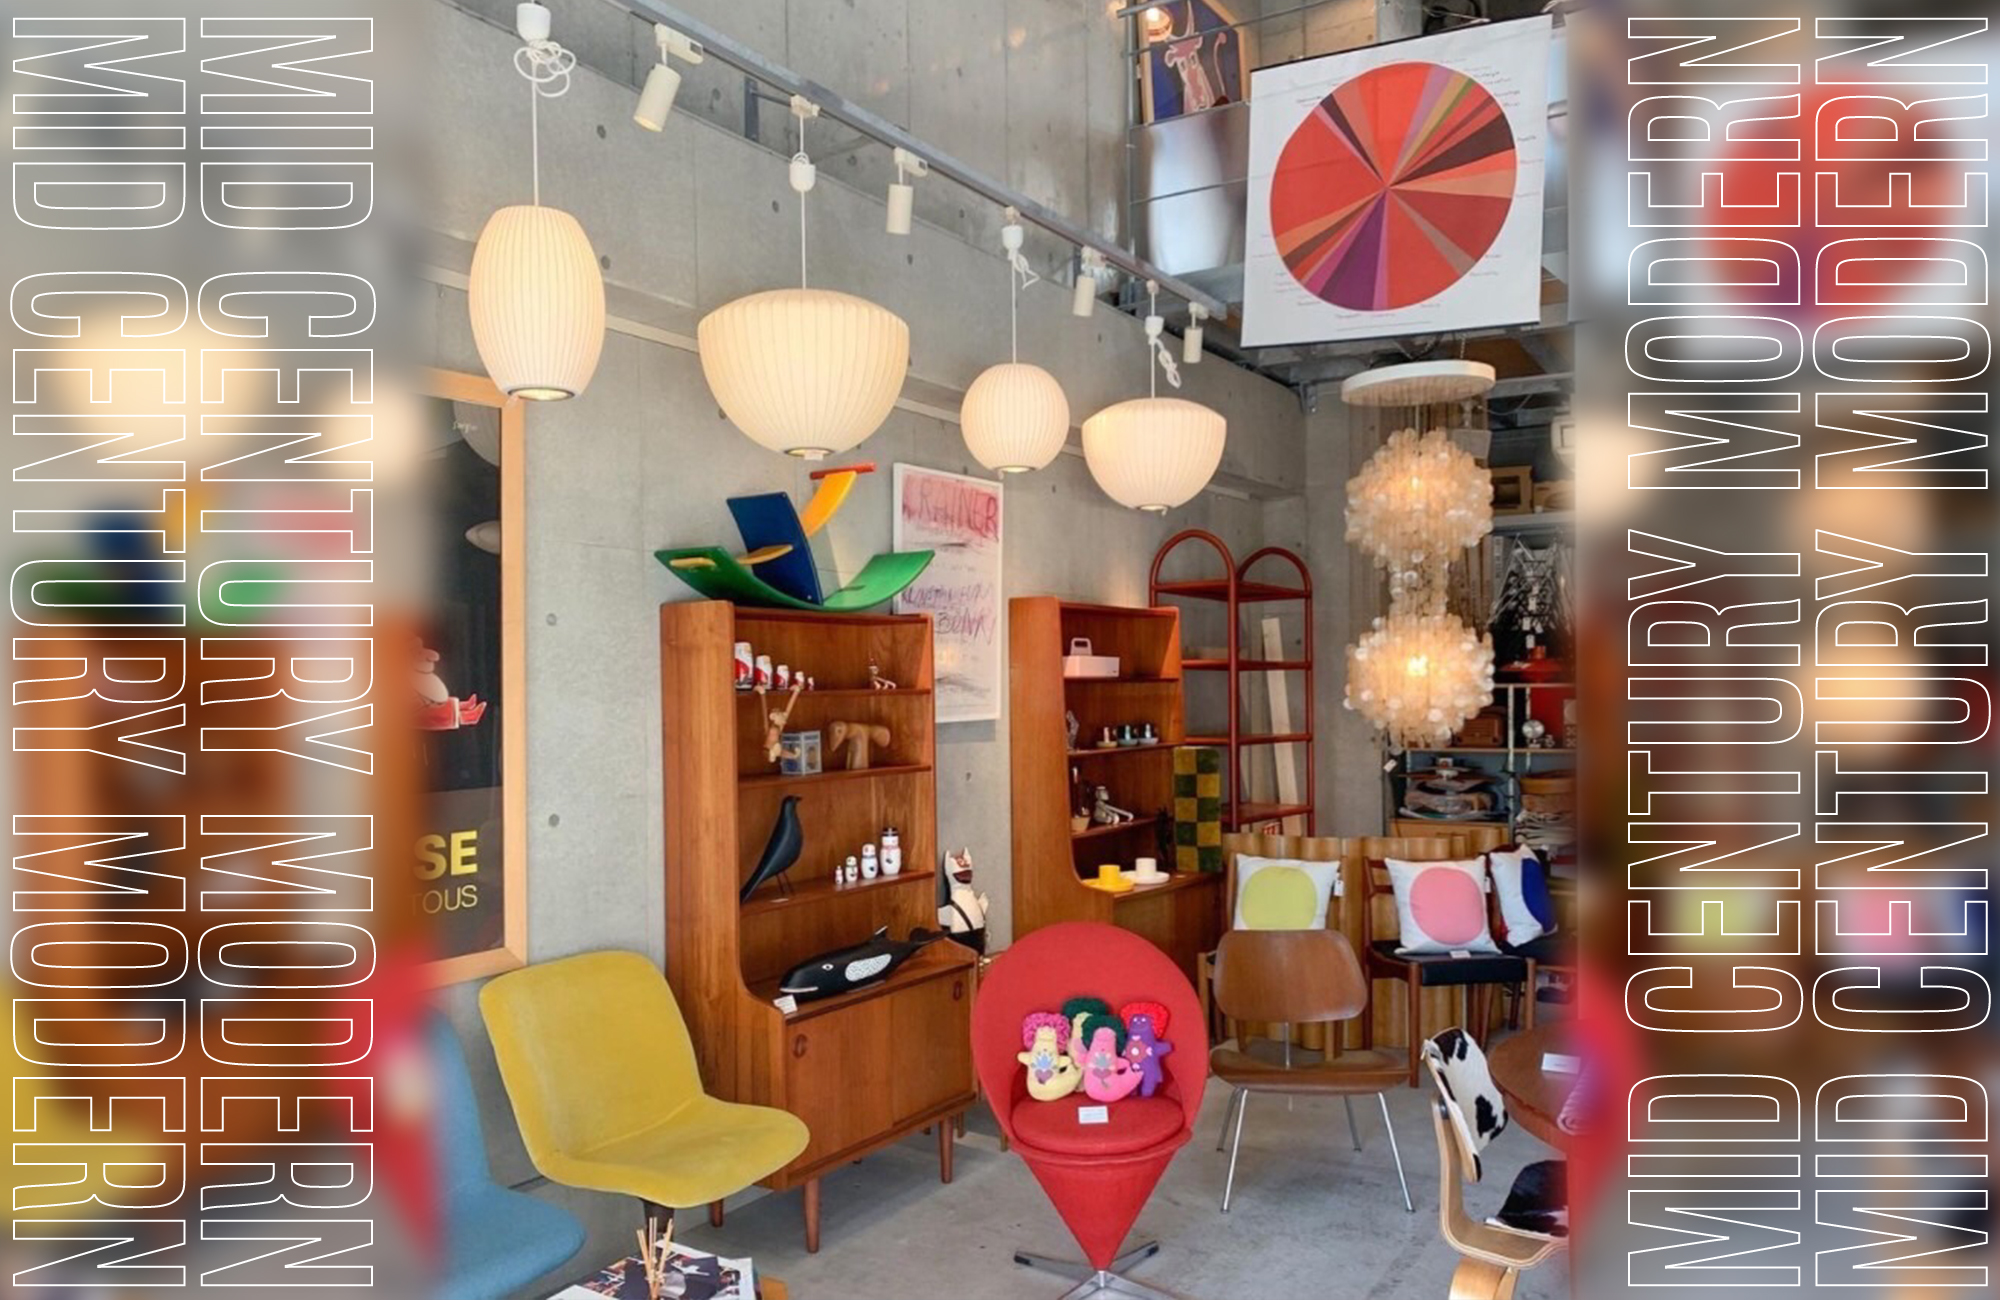 日本屈指のイームズのシェルチェアの品揃えを始めジョージ・ネルソンやエーロ・サーリネンなどインテリアの黄金期と言われる1940年～70年のミッドセンチュリー期に活躍したデザイナーの家具や小物を扱うMid-Century MODERN   @midcenturymoderntokyo 
今回は『58works』の民藝プロジェクトに合わせて日本の伝統的な陶器とのコラボレーションで新しいライフスタイルの展示をします。